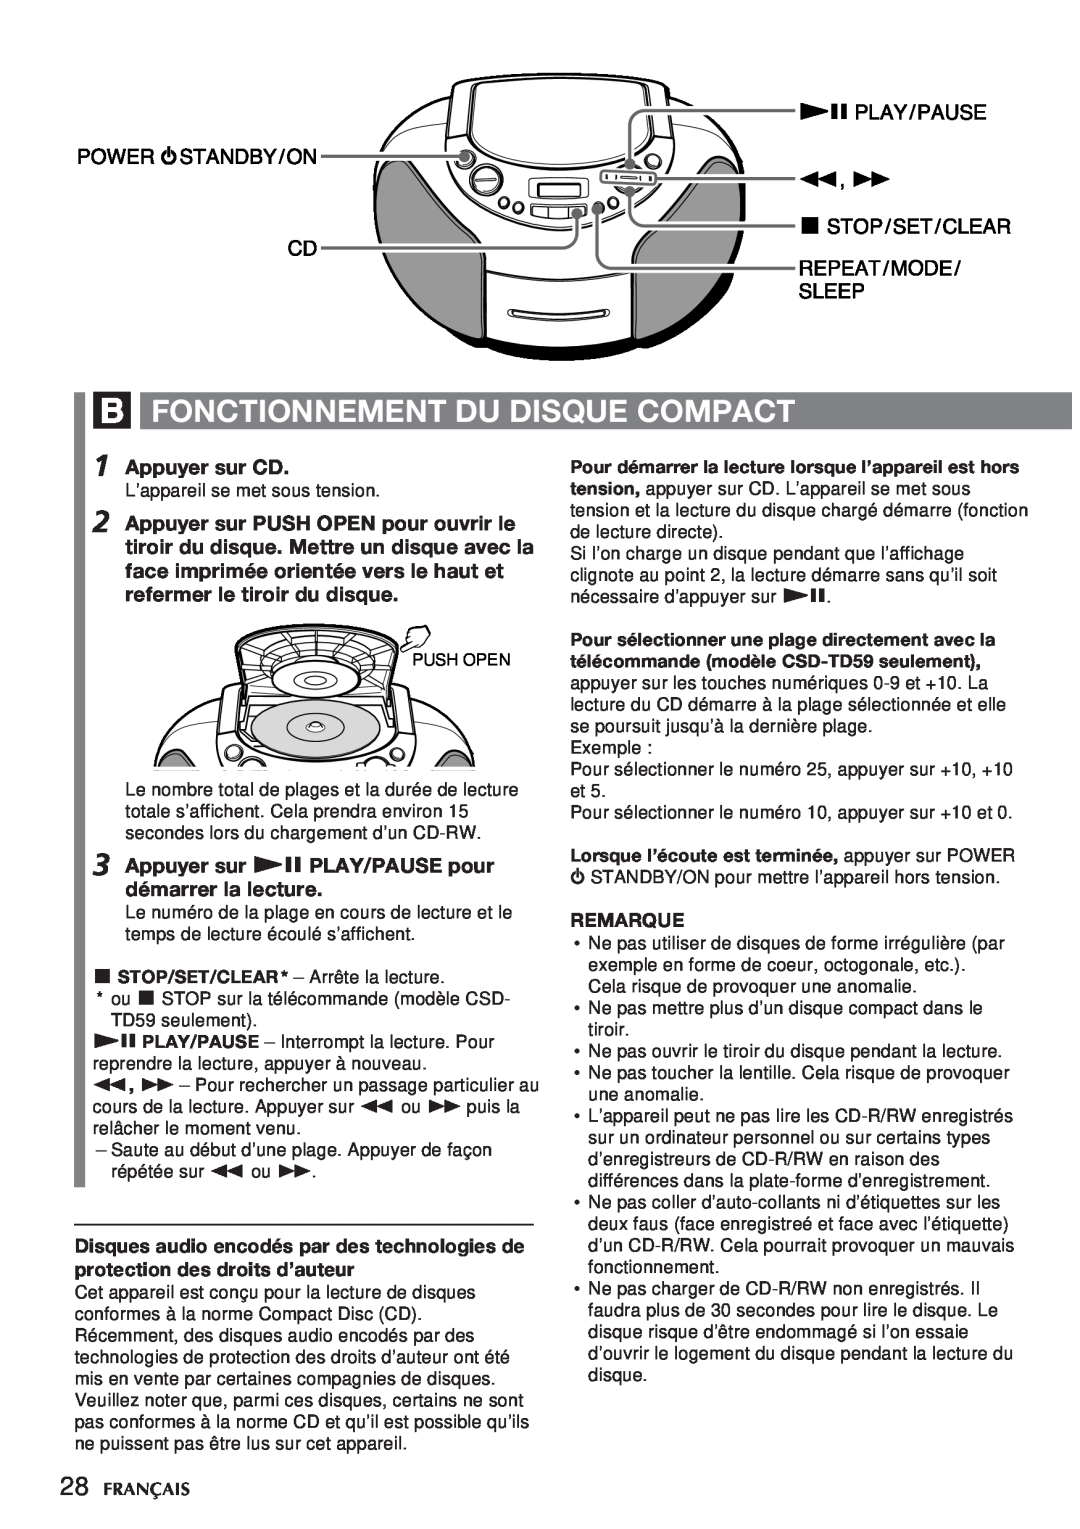 Aiwa CSD-TD59 manual B Fonctionnement Du Disque Compact, Appuyer sur CD, Appuyer sur e PLAY/PAUSE pour démarrer la lecture 